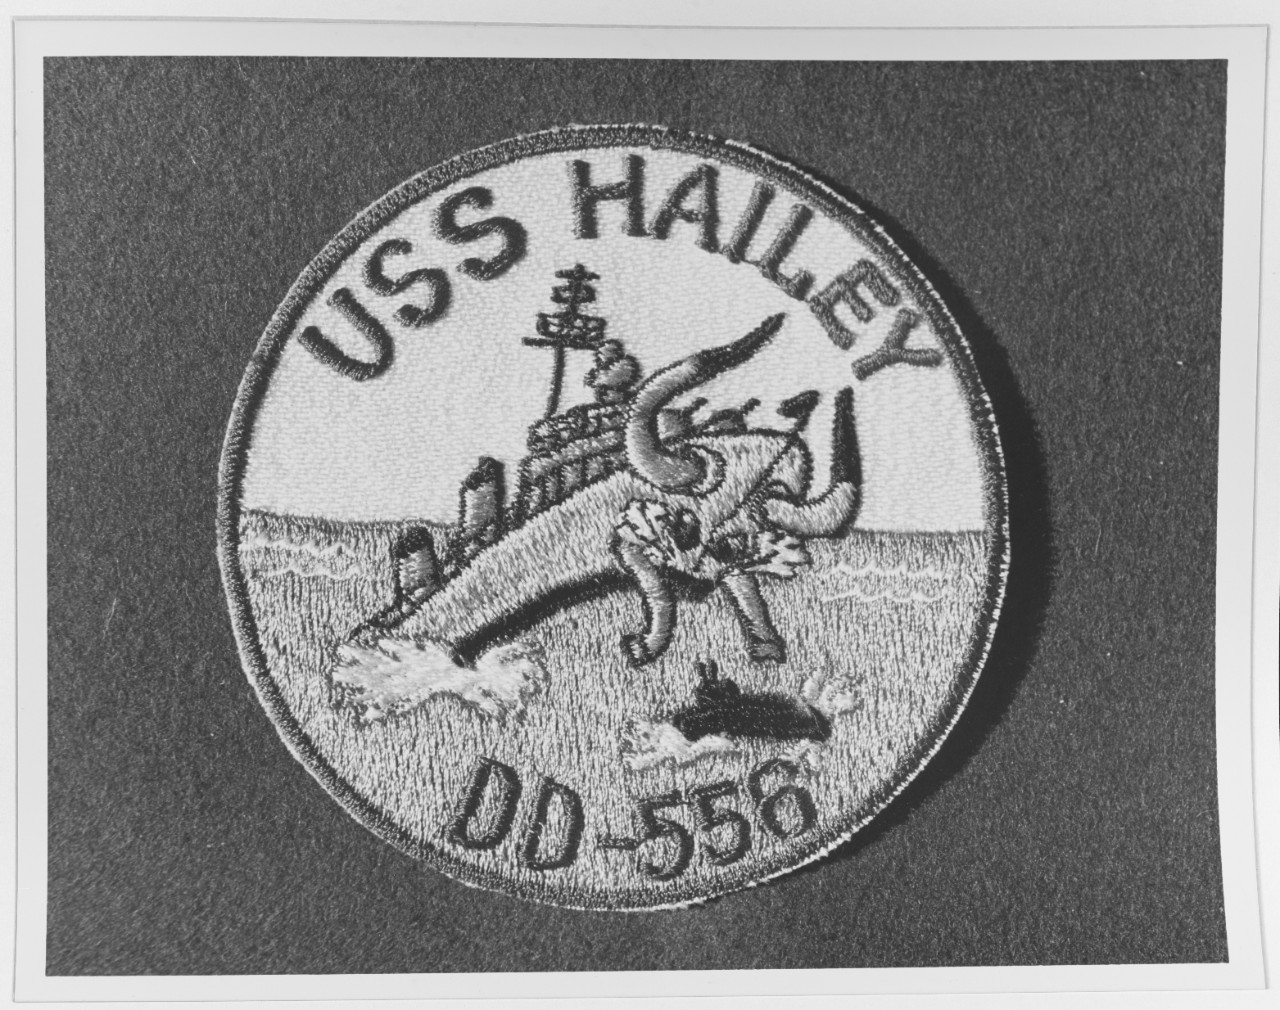 Insignia:  USS HAILEY (DD-556)